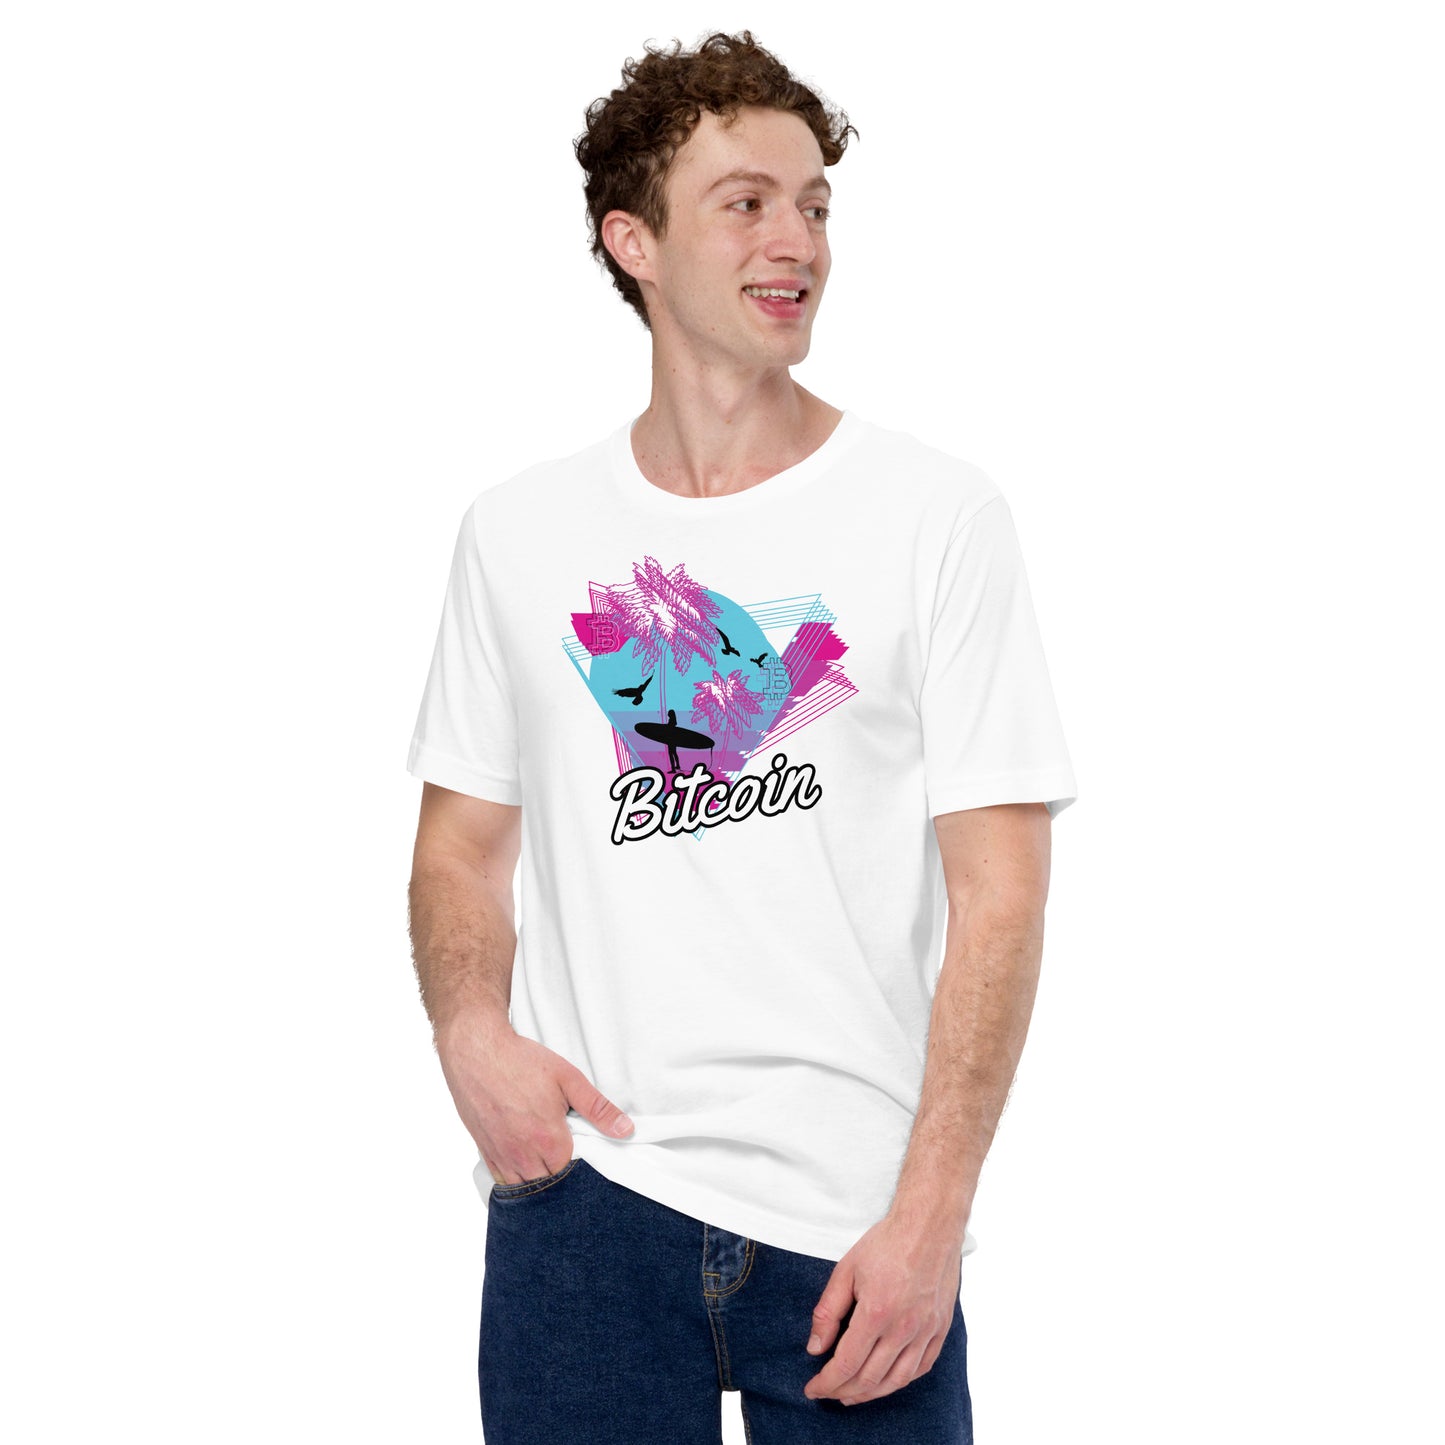 Bitcoin Surf Neon T-Shirt